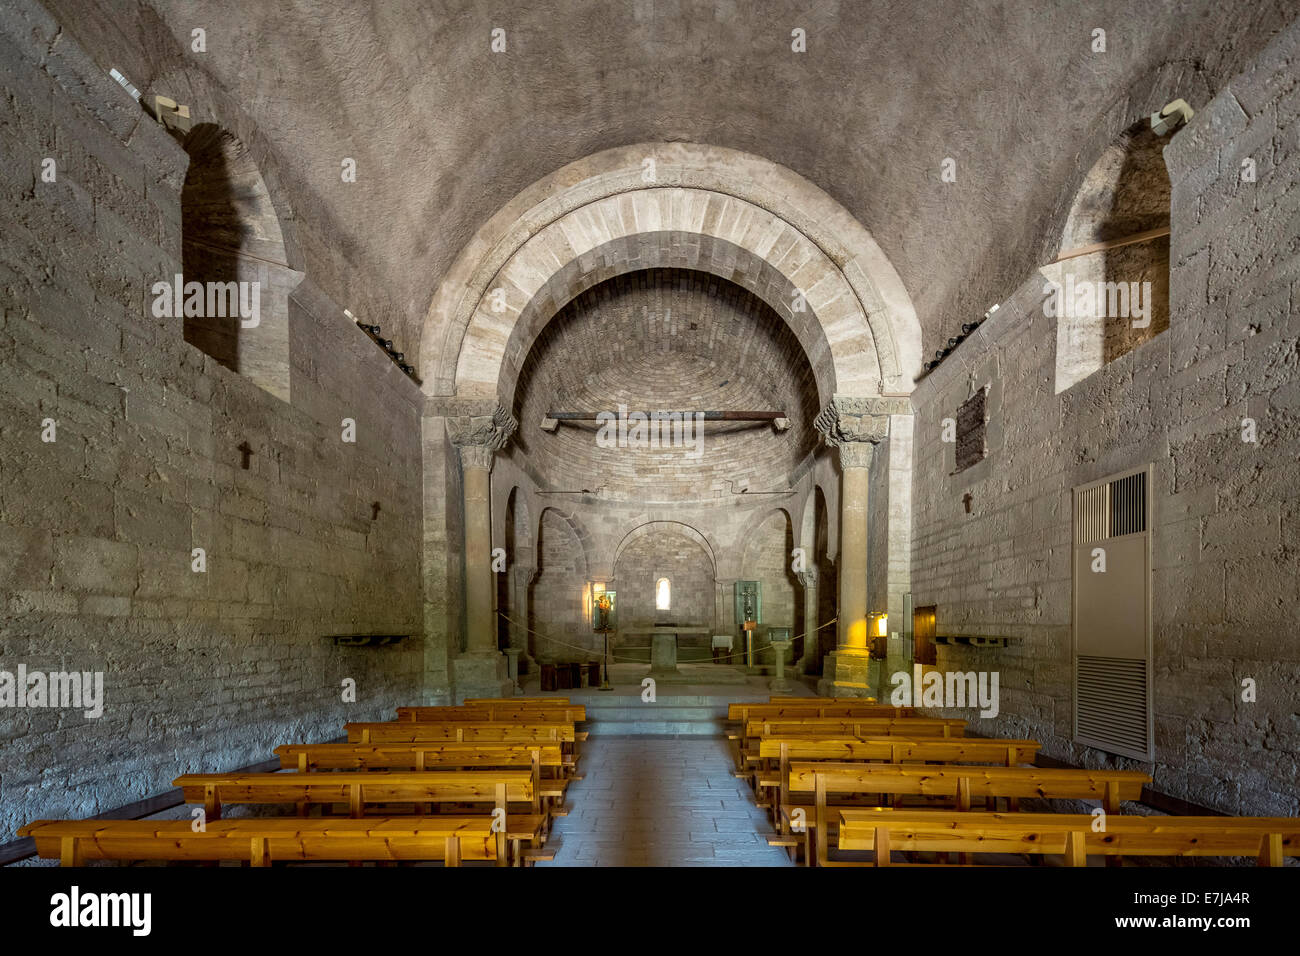 La Nef, de l'intérieur de l'église romane de Santa Maria de Porqueres, Surroca, Catalogne, Espagne Banque D'Images